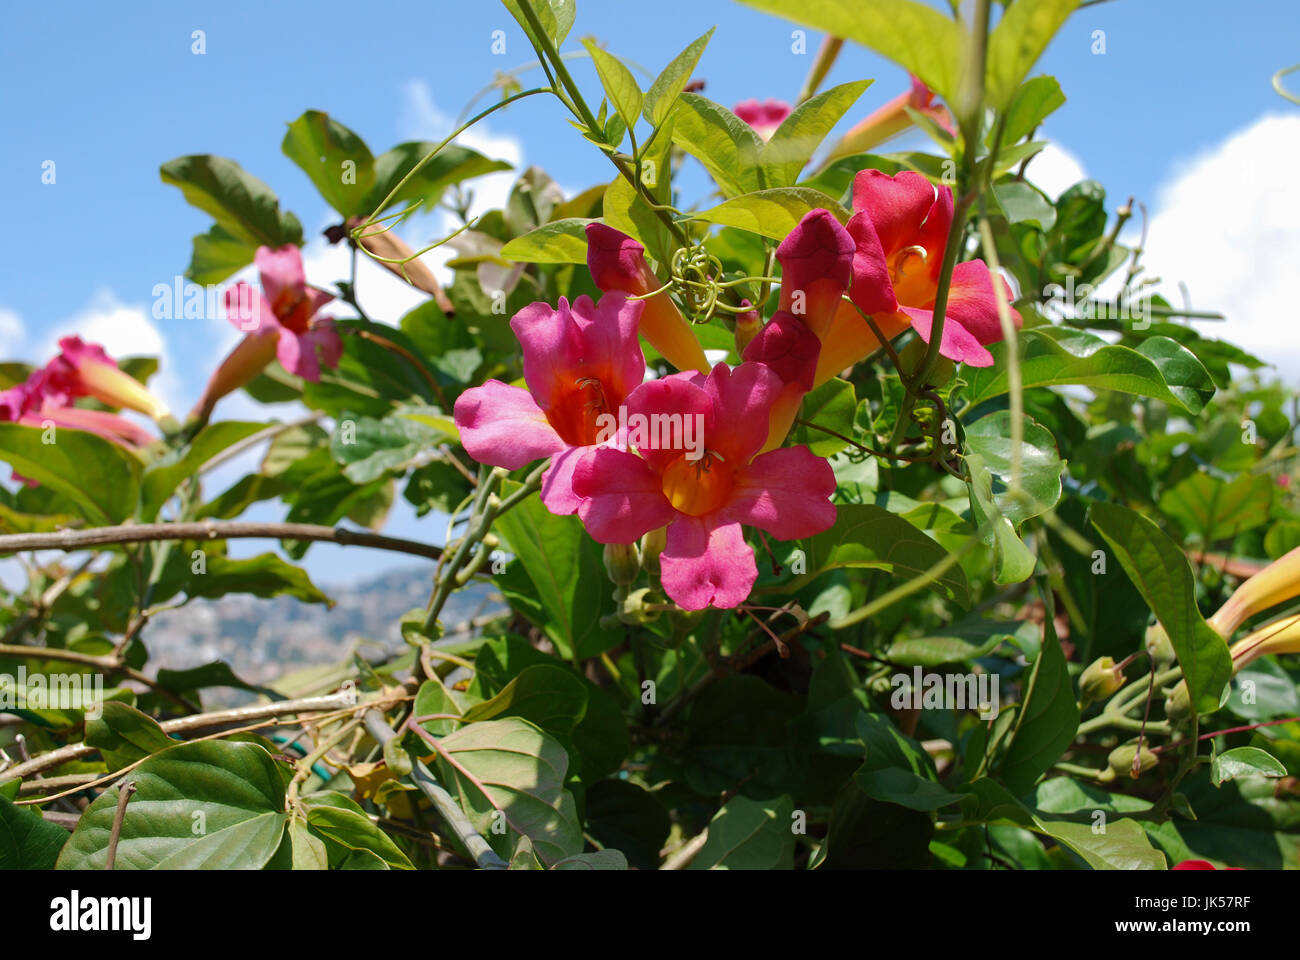 Bignonia capreolata (Famiglia Bignoniaceae) rosa fiori sbocciano i fiori sul cielo blu sullo sfondo. Foto Stock